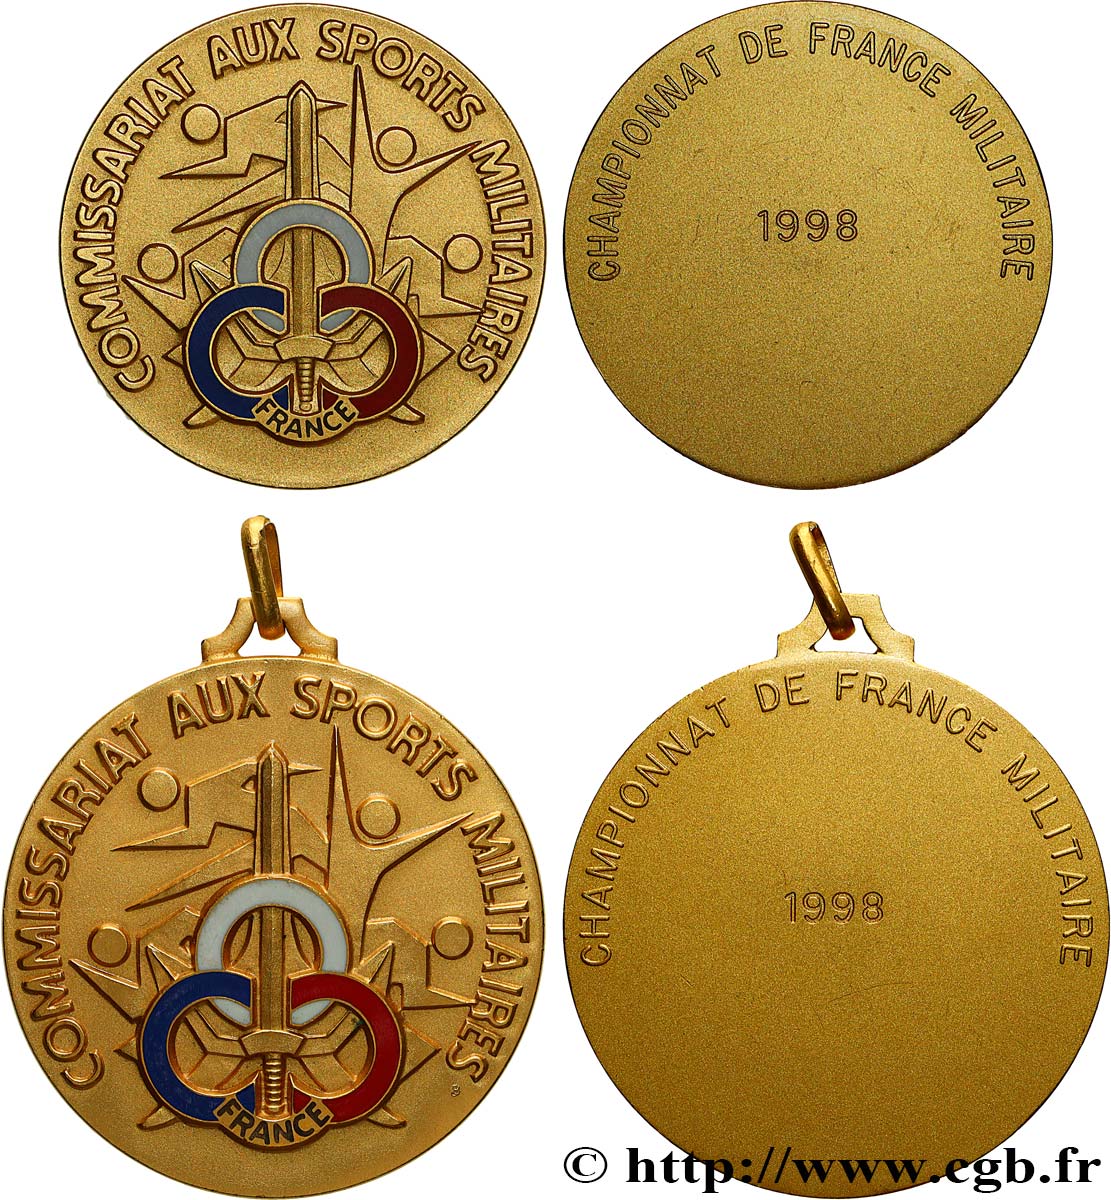 TIR ET ARQUEBUSE Médaille, Commissariat aux sports militaires, Lot de 2 exemplaires SUP